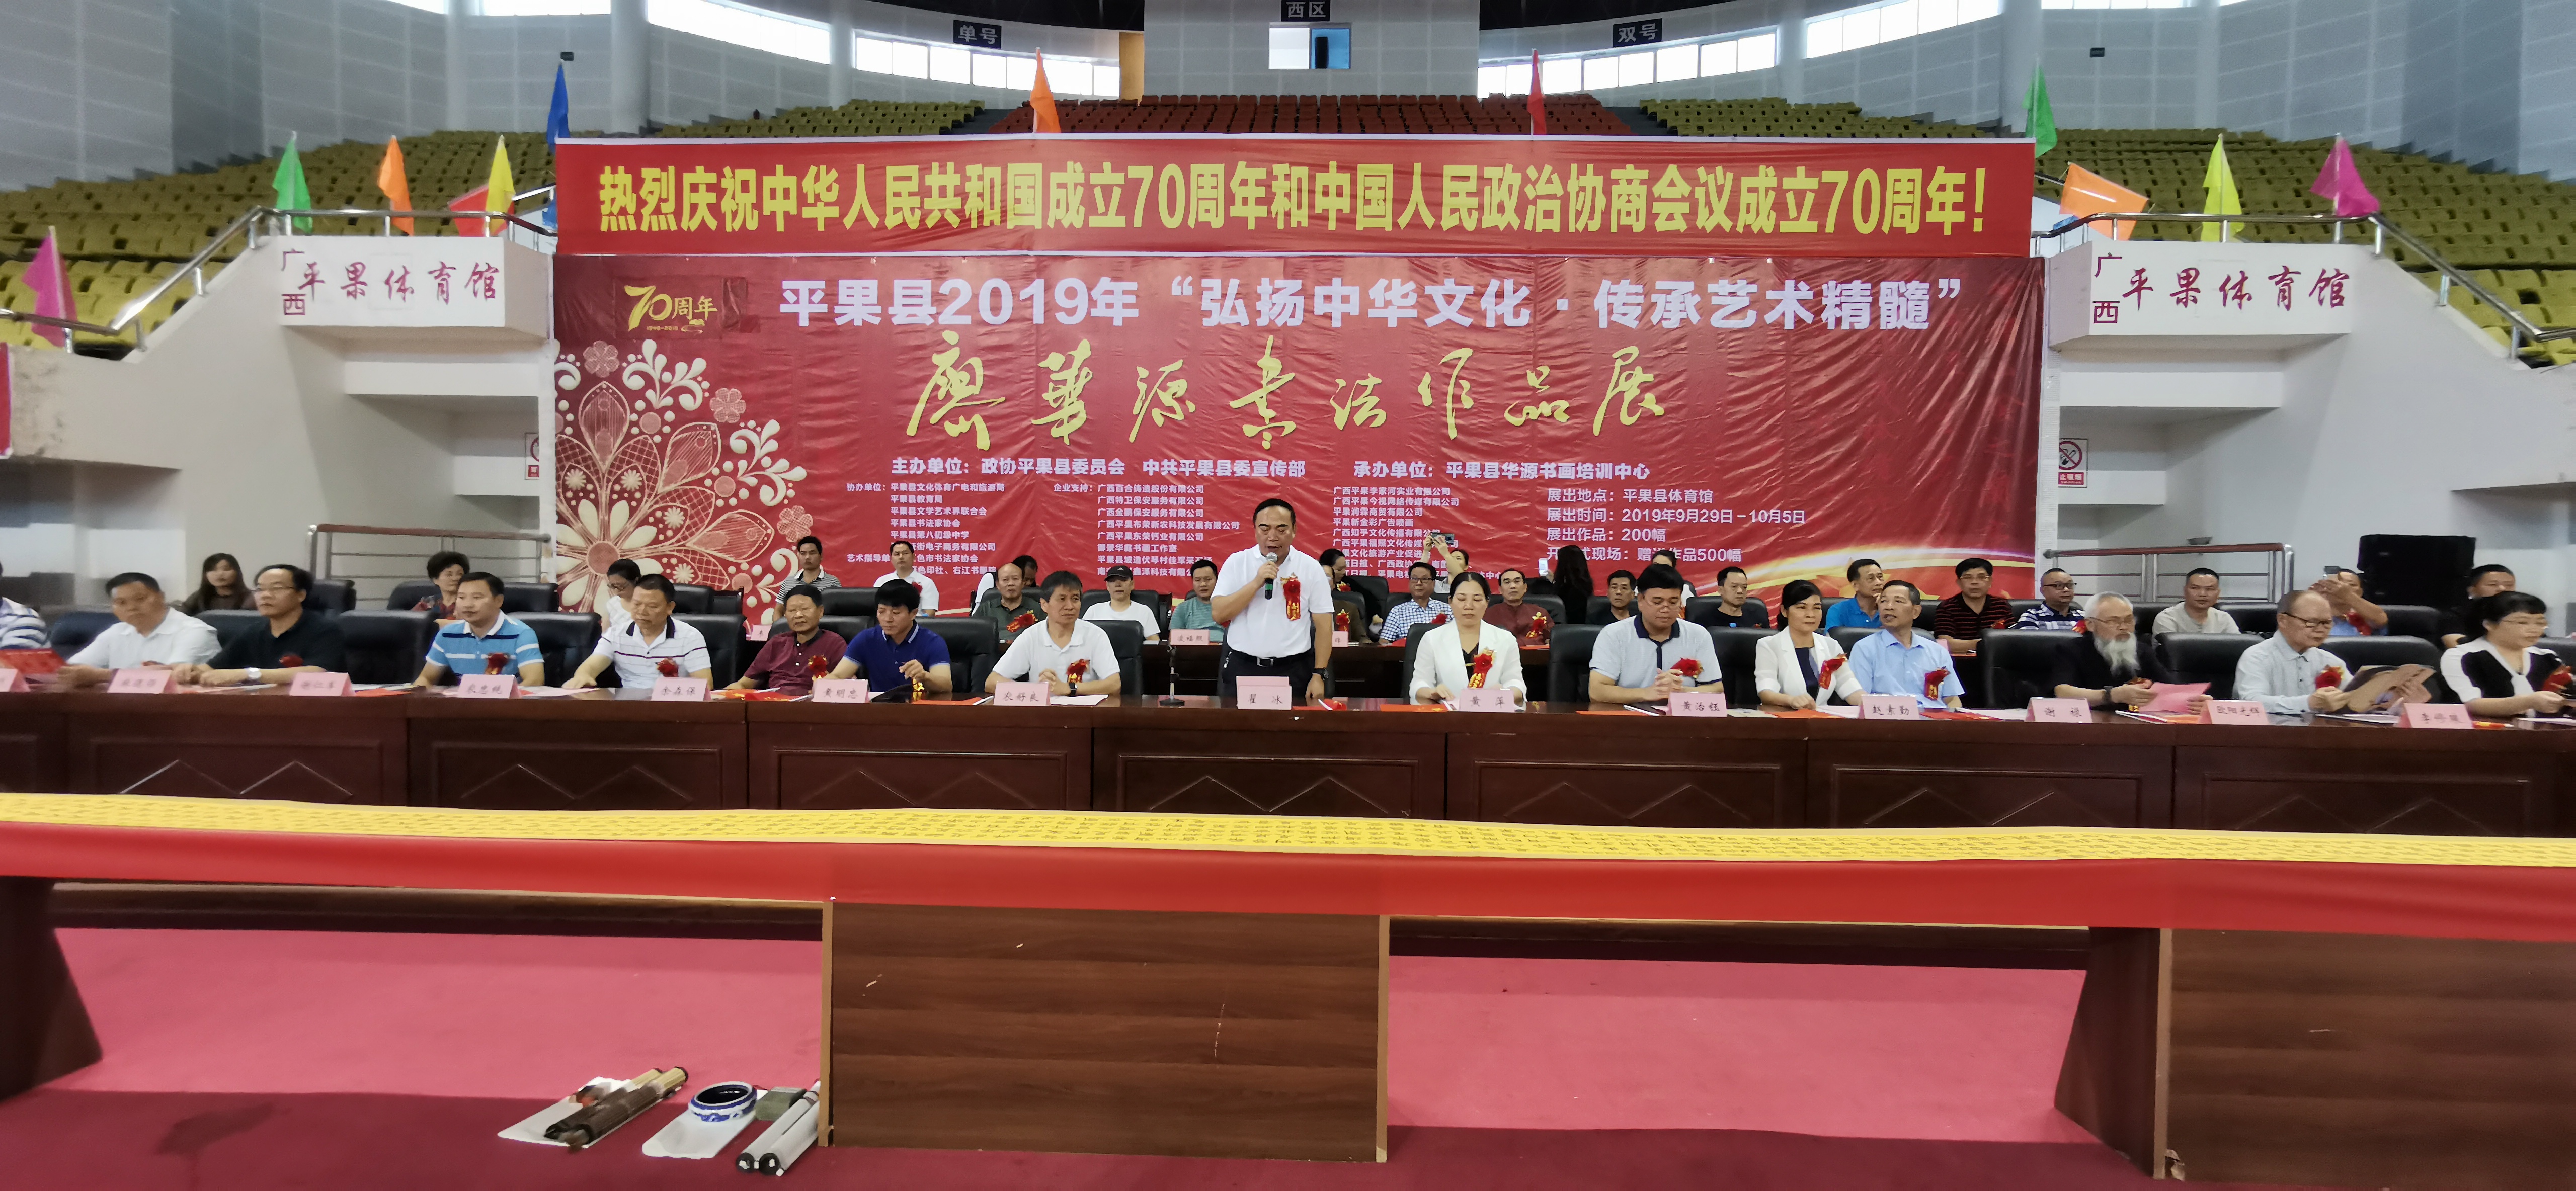 图为 县政协主席翟冰宣布书法作品展开幕.